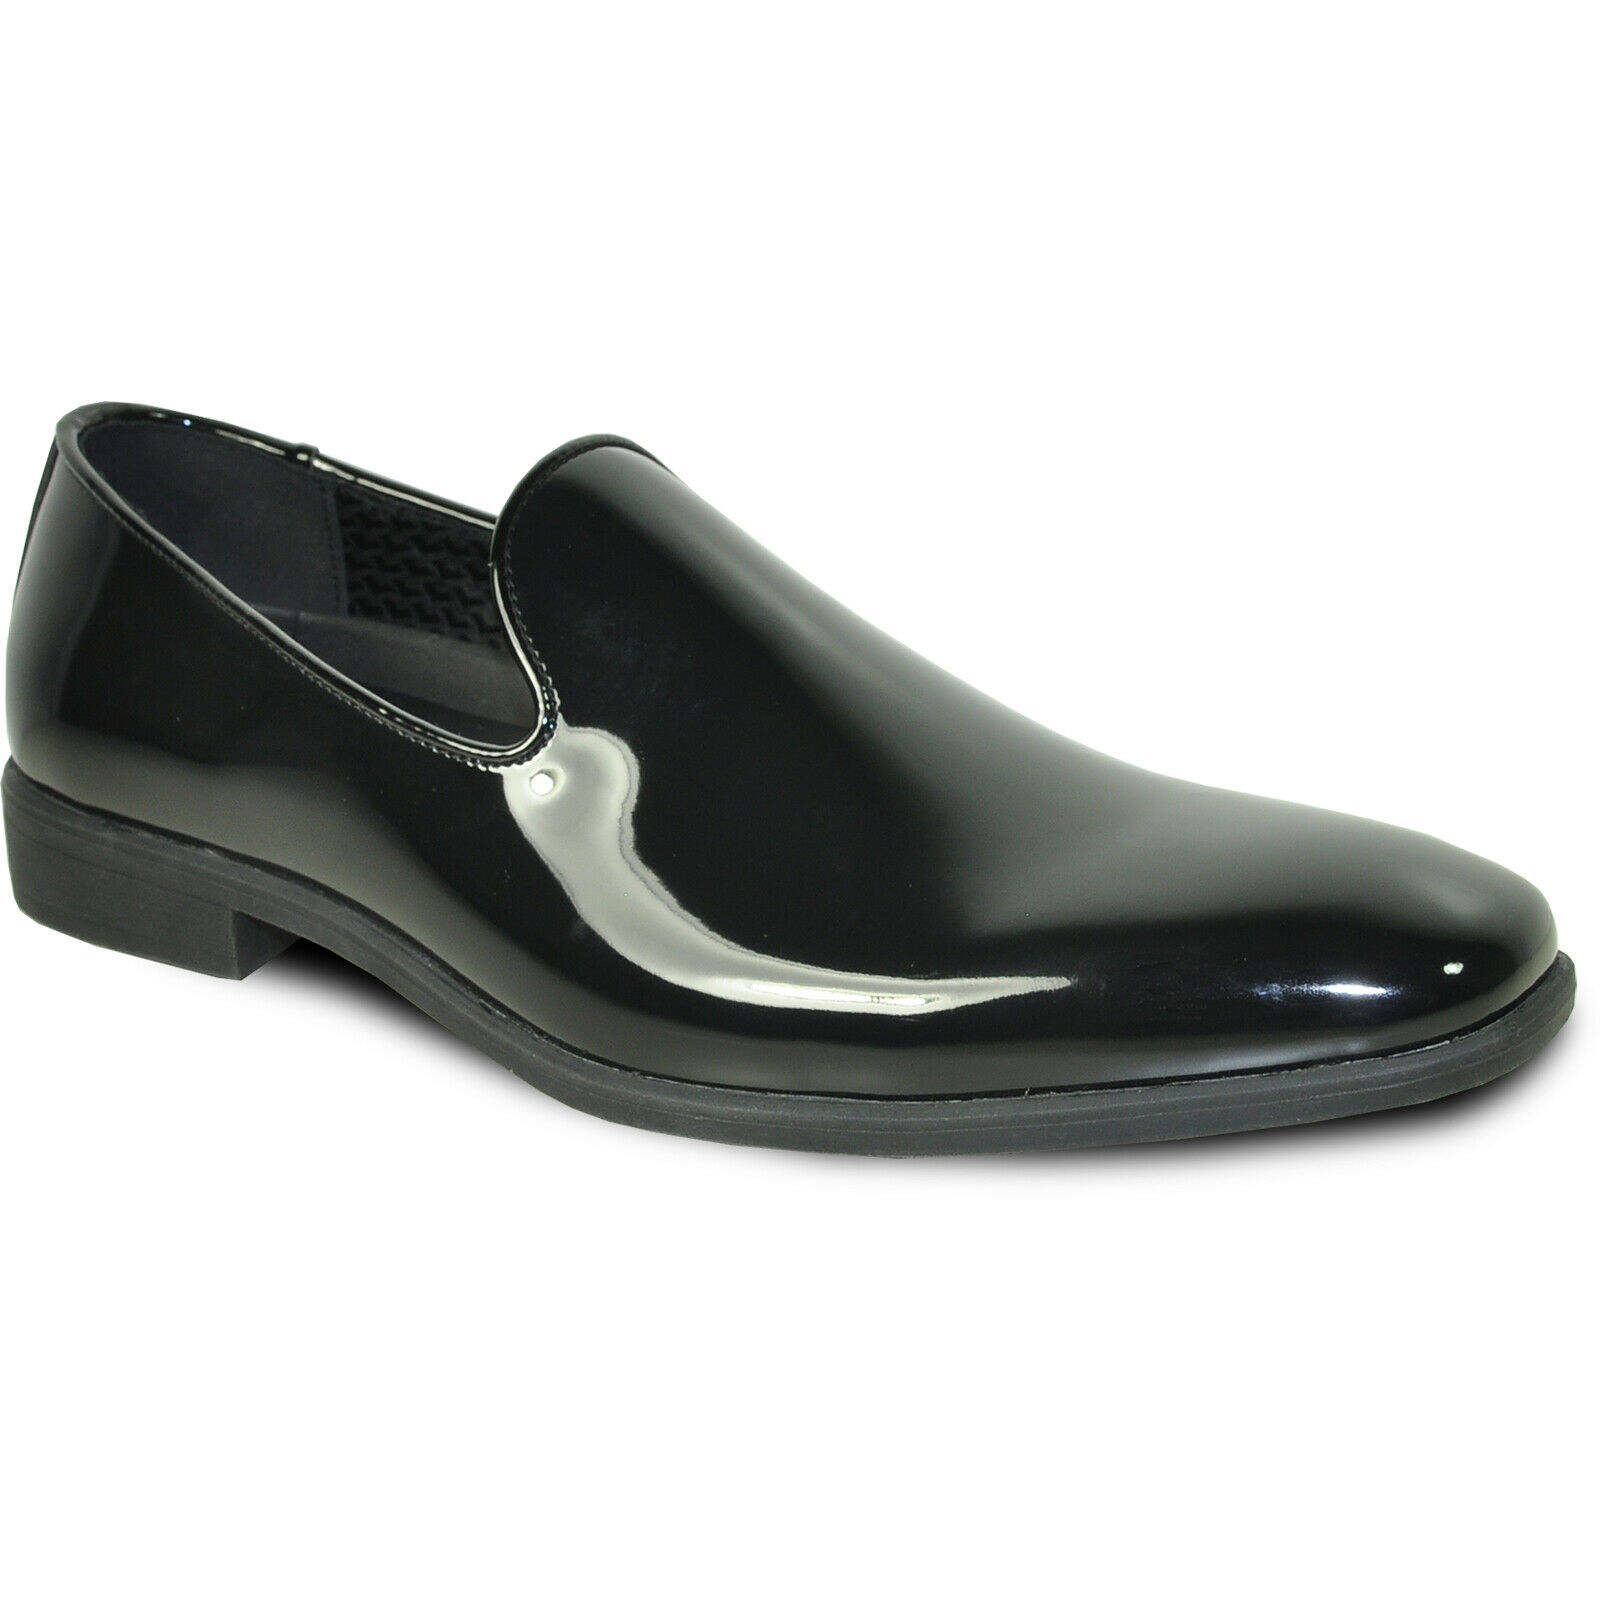 Vangelo Men Dress Shoe Vallo-3 Tuxedo for Prom Wedding Black Patent ...